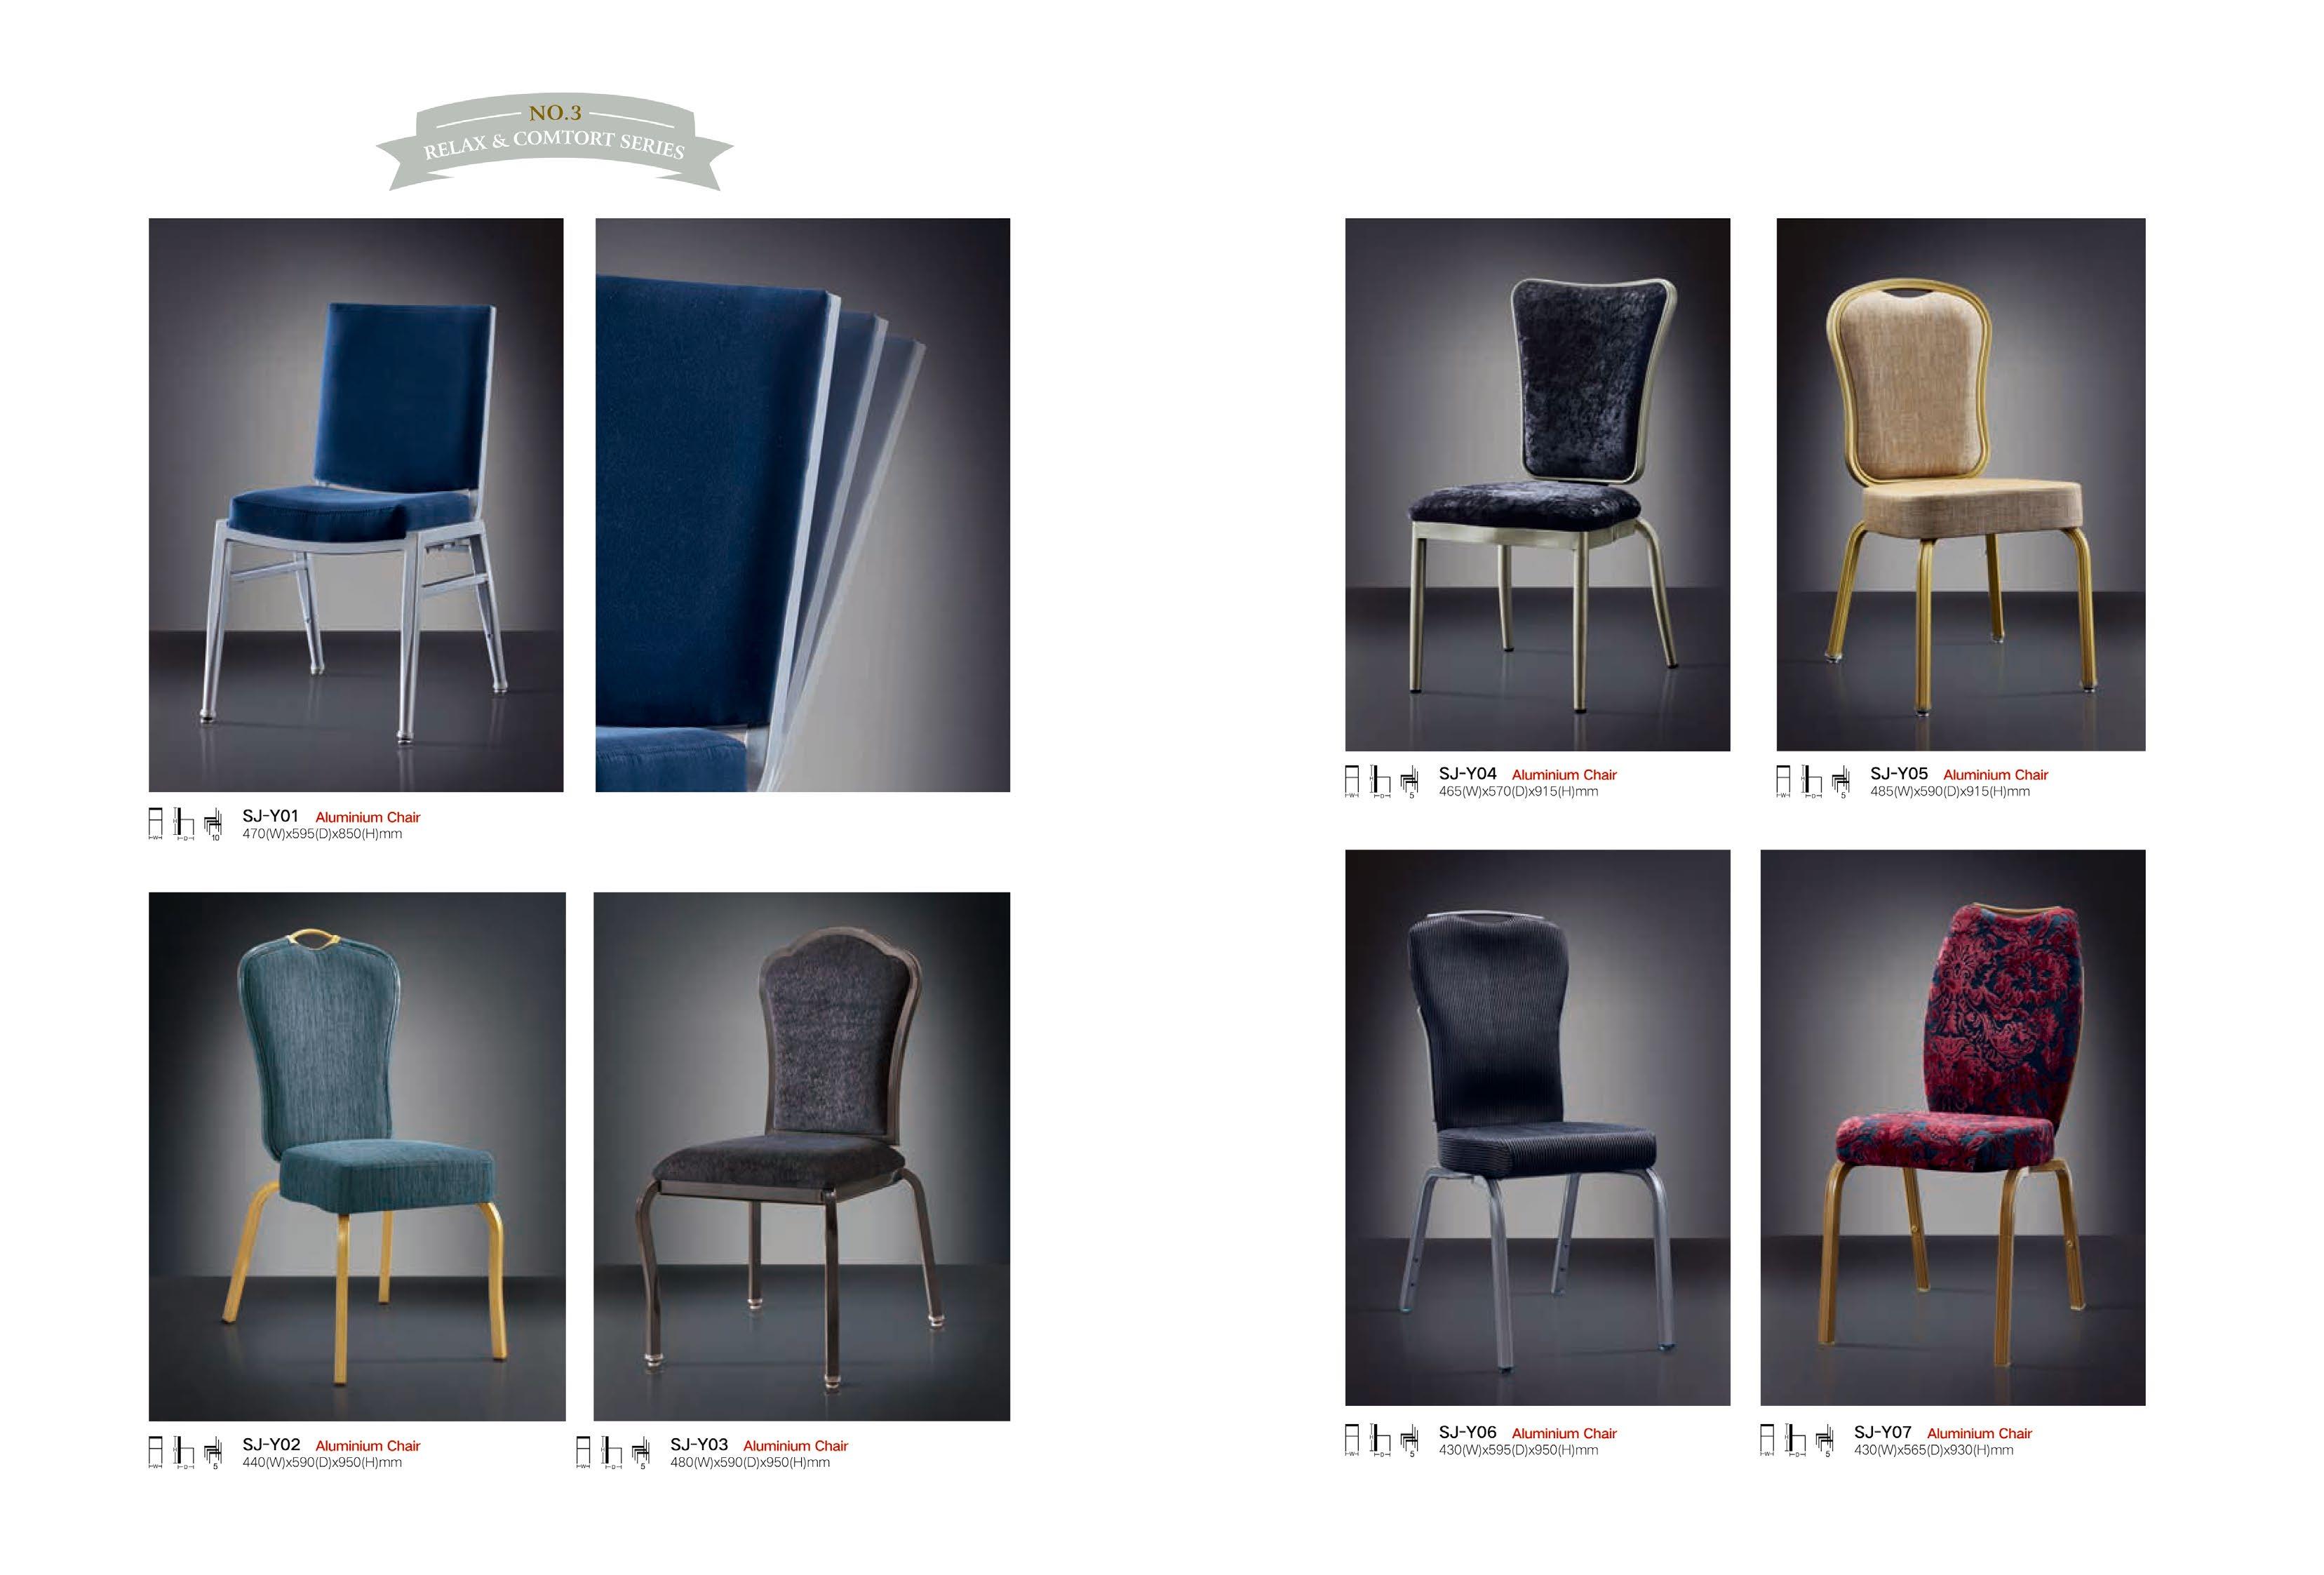 beat365亚洲官网酒店家具 北欧休闲椅子 创意家具餐椅 酒店椅子时尚简约家用餐椅